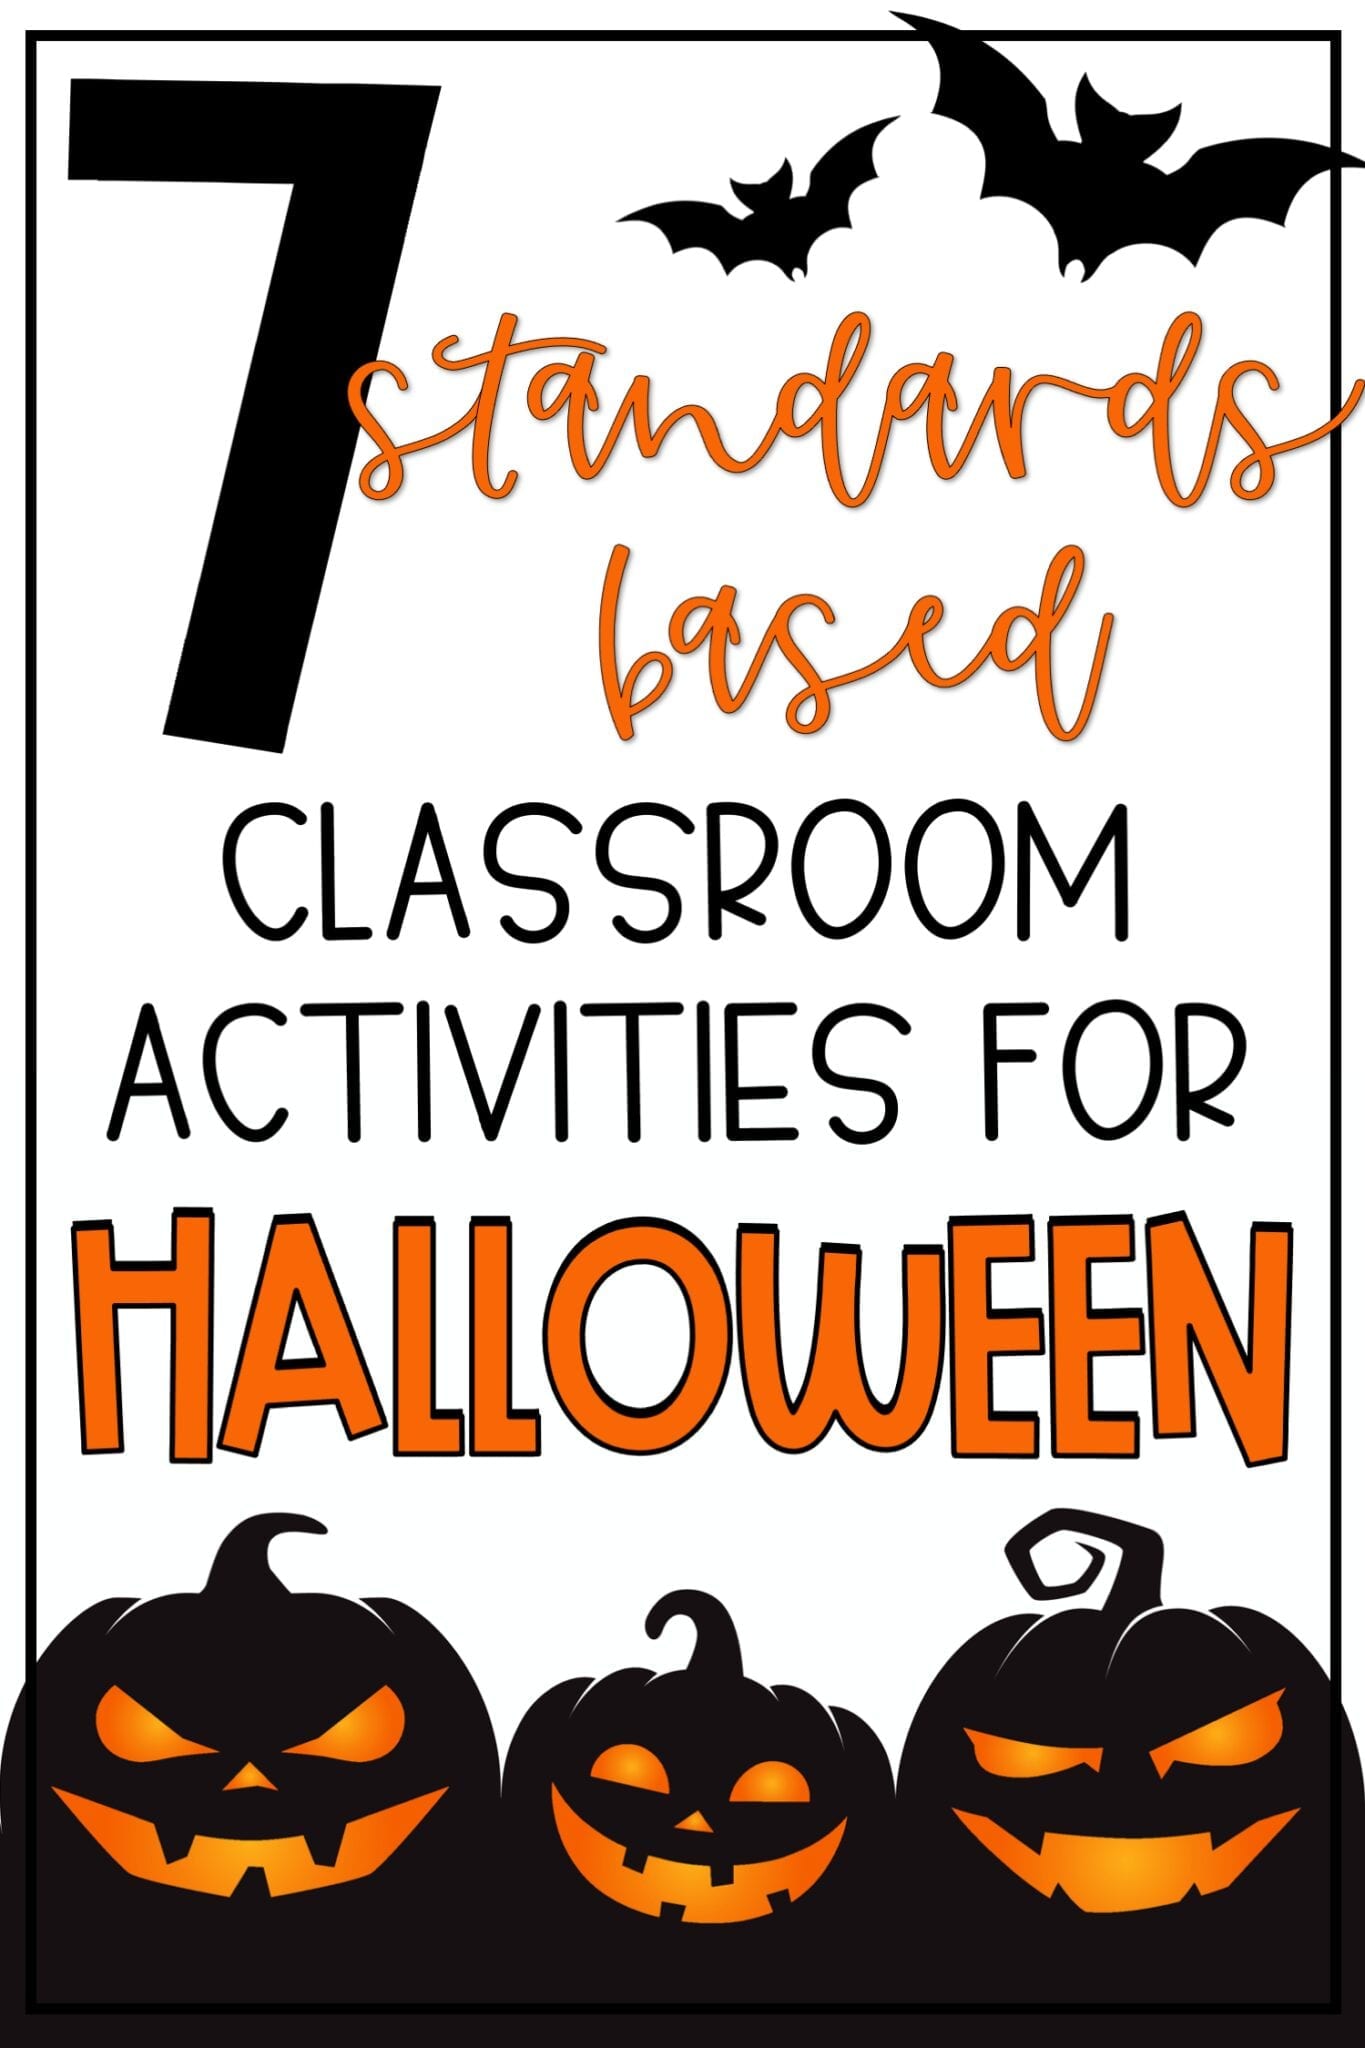 Upper Elementary Classroom Activities for Halloween